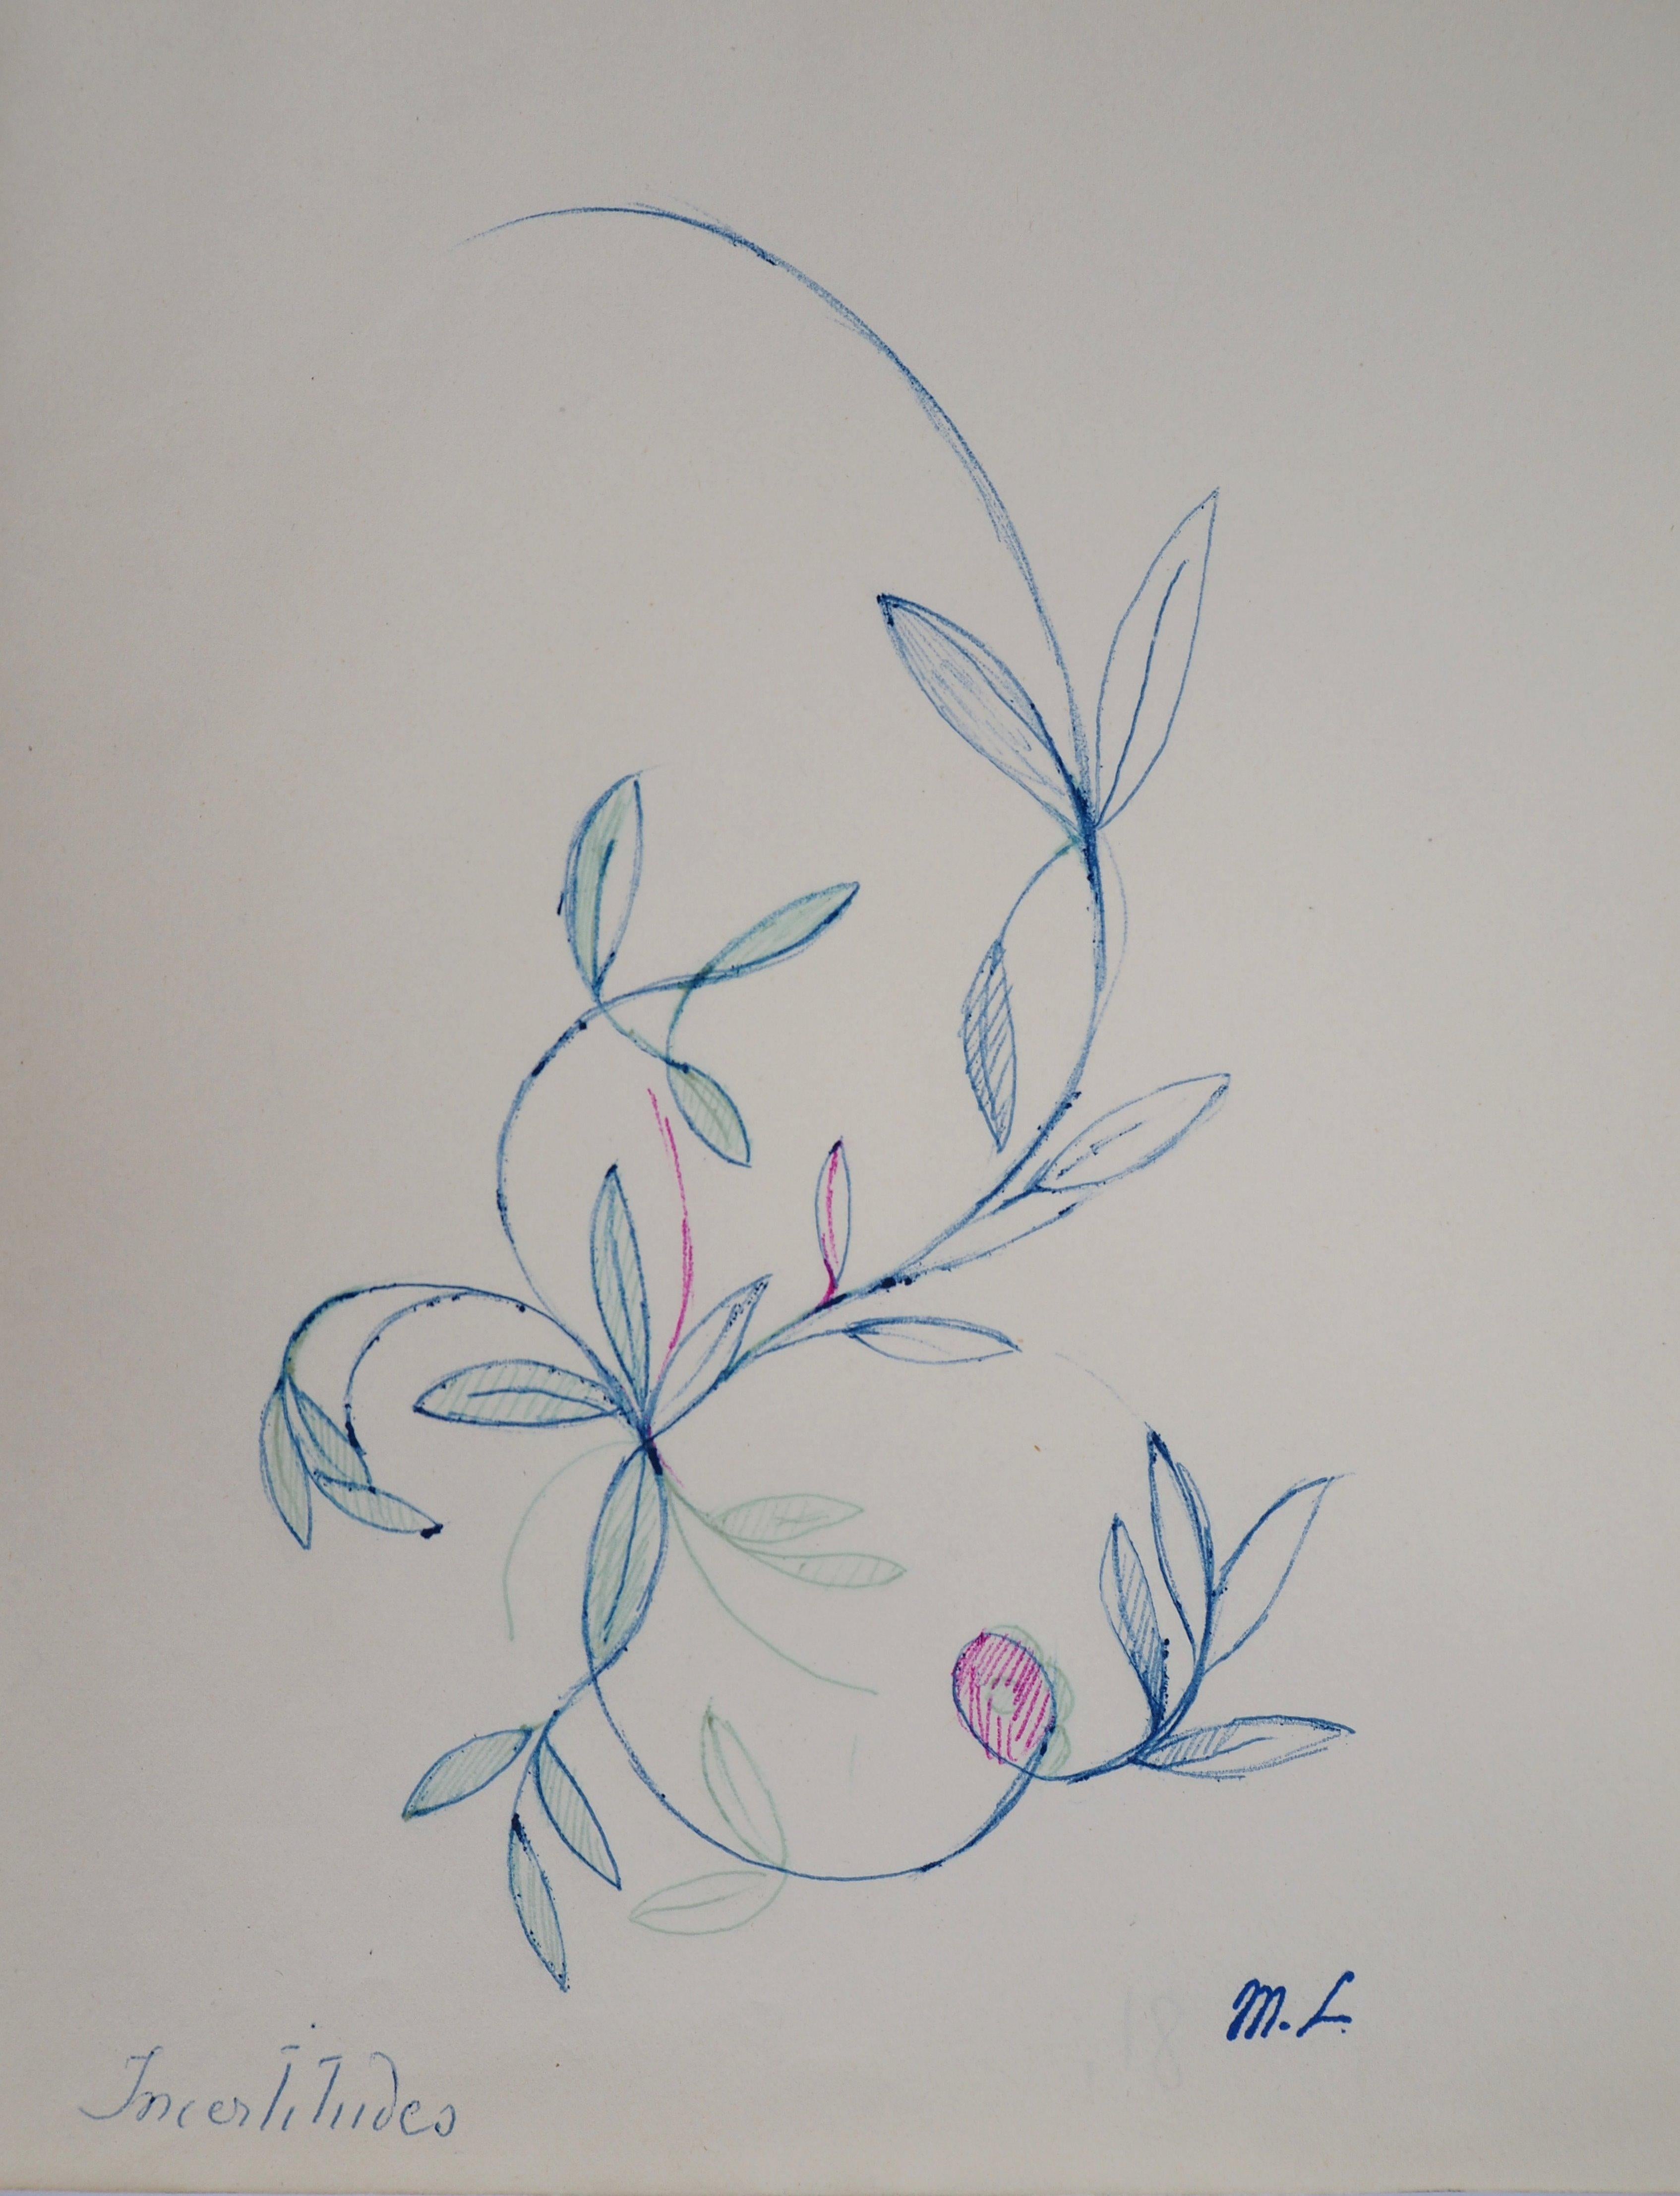 Marie LAURENCIN
Florales Ornament, 1953

Original-Tuschezeichnung 
Signiert mit Künstlerstempel
Auf Papier 24,5 x 19,5 cm (ca. 9,6 x 7,6 inch)

Sehr guter Zustand, Spuren der Manipulation auf dem Papier